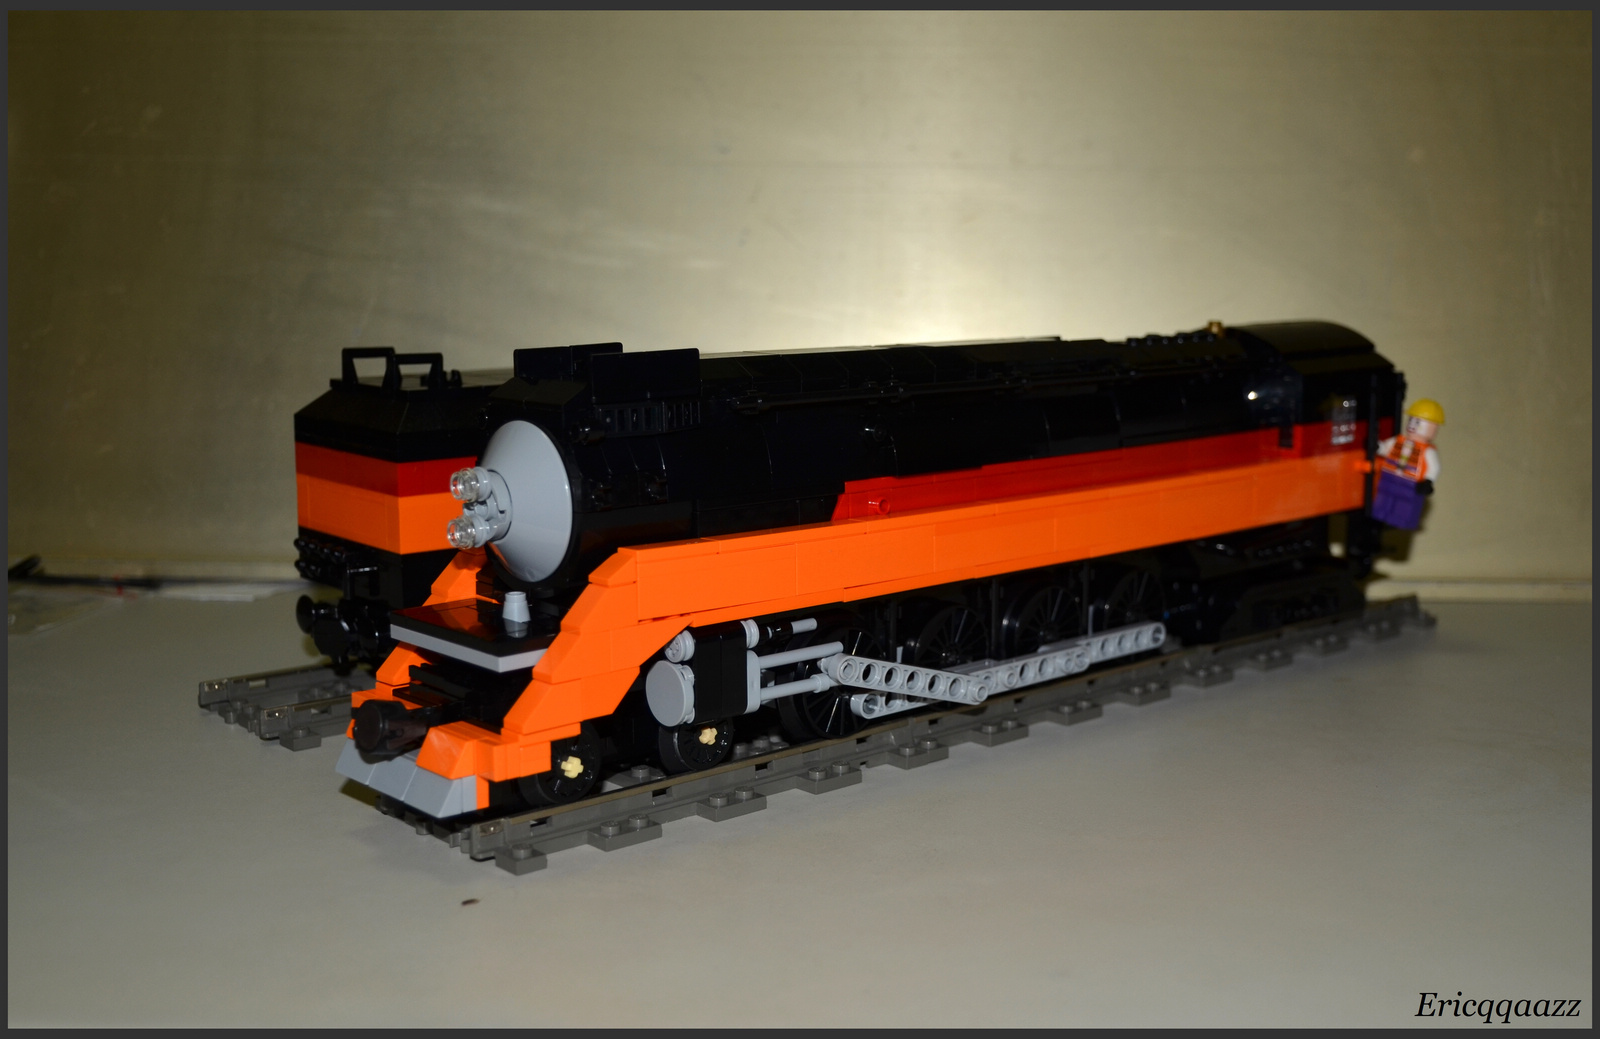 4449号蒸汽机车图片